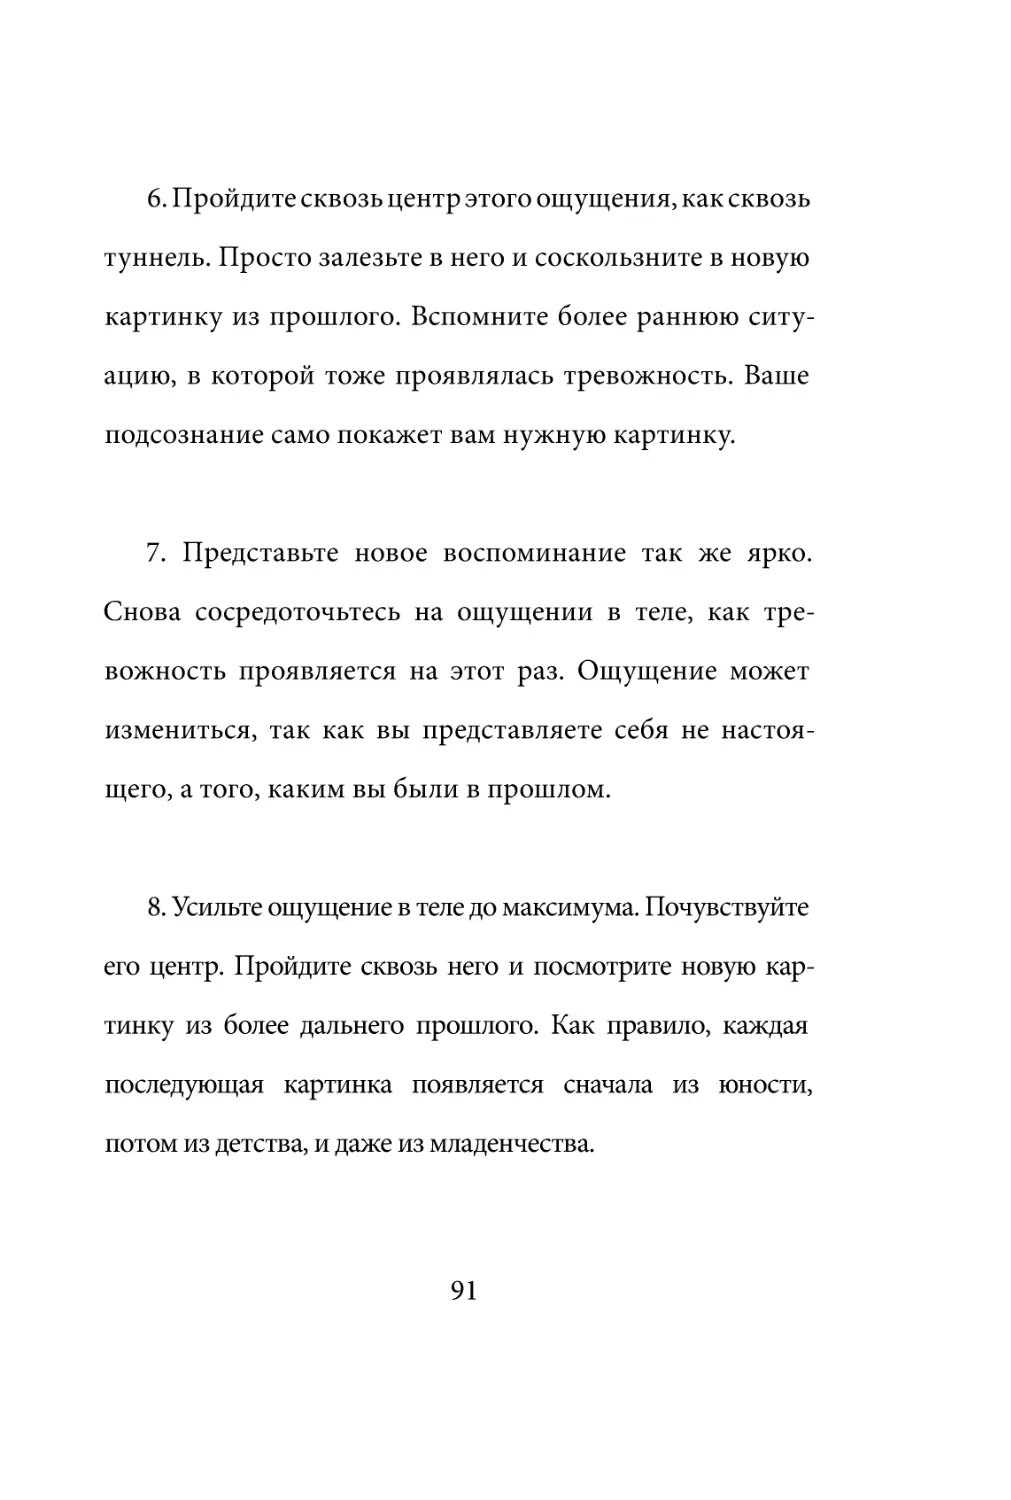 Sergey_Filippov_Dnevnik_samorazvitia_Evolyutsia_Vnutrennego_Sostoyania_91.pdf (p.91)